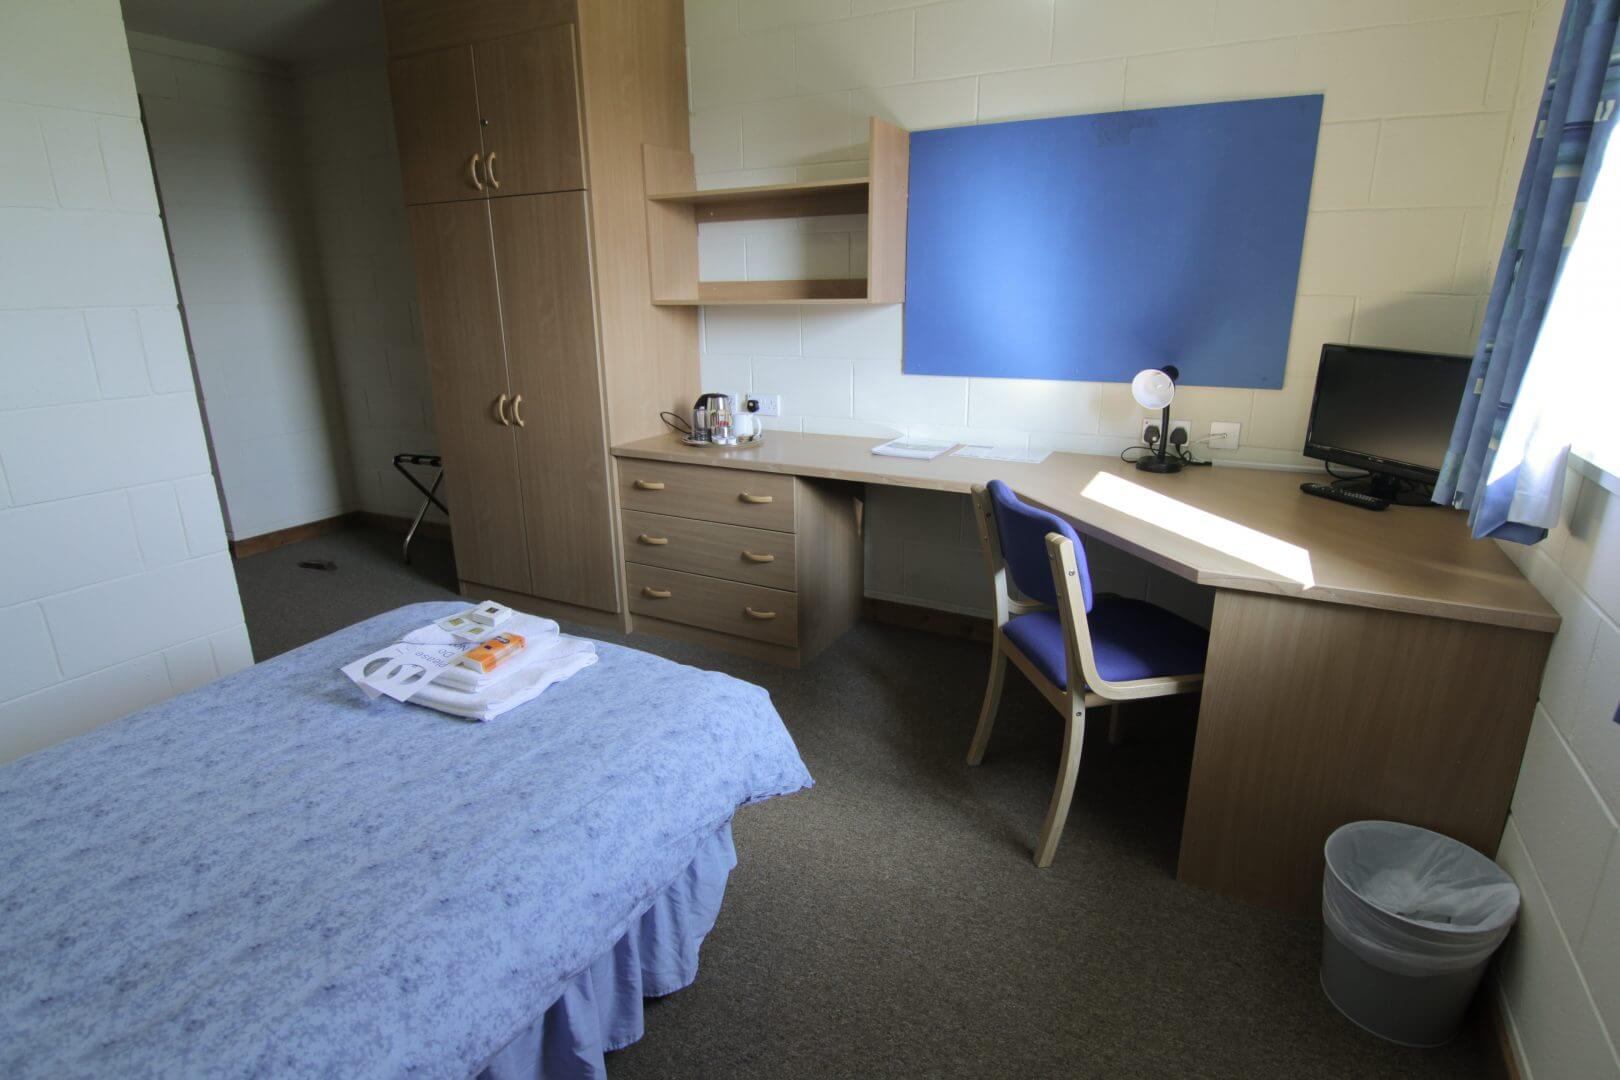 Craibstone Estate hostel accommodation near Aberdeen